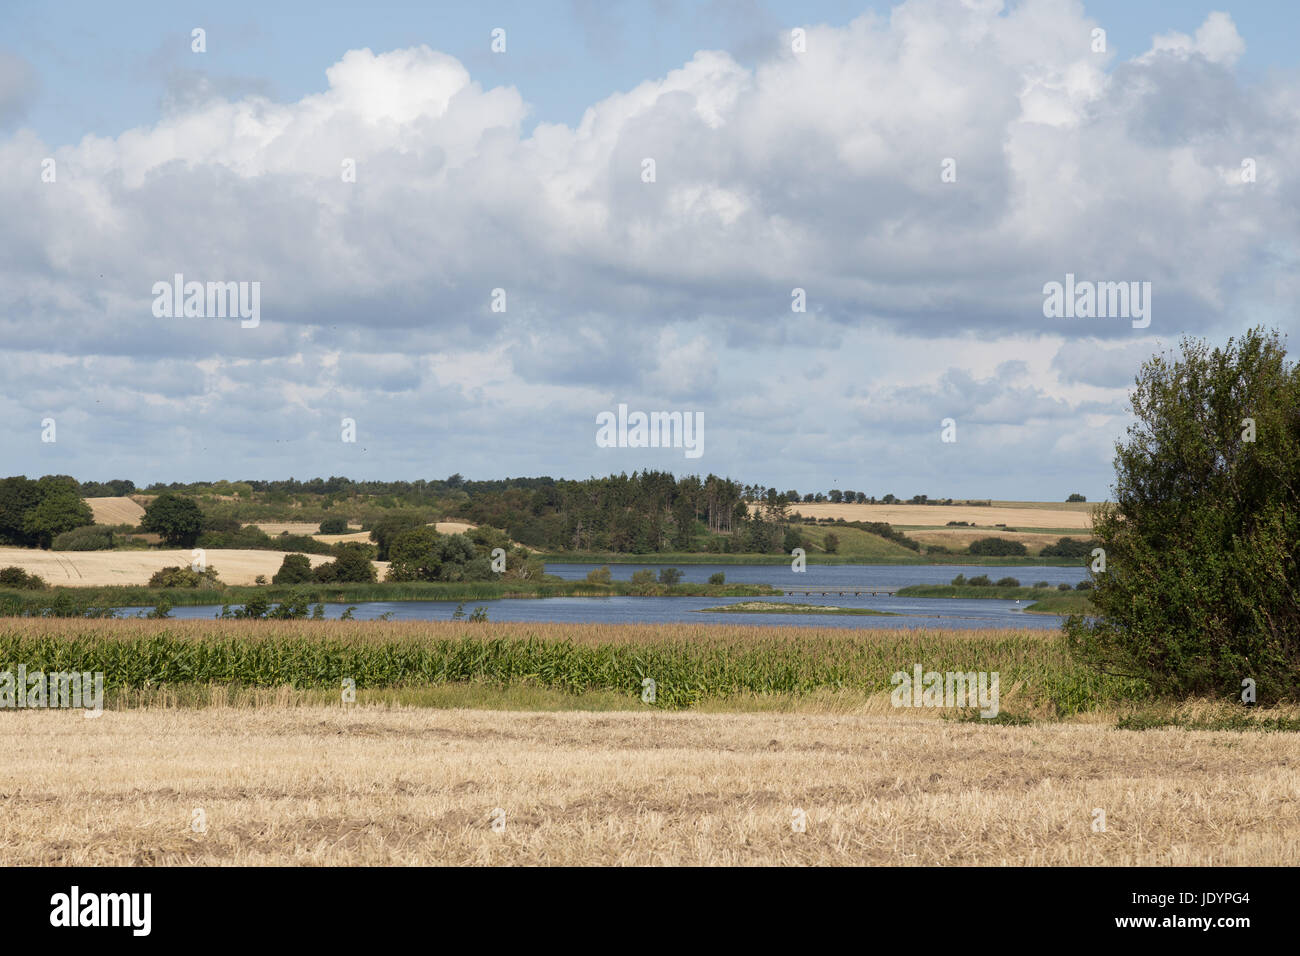 Ein malerischer See inmitten von abgeernteten Feldern Stock Photo